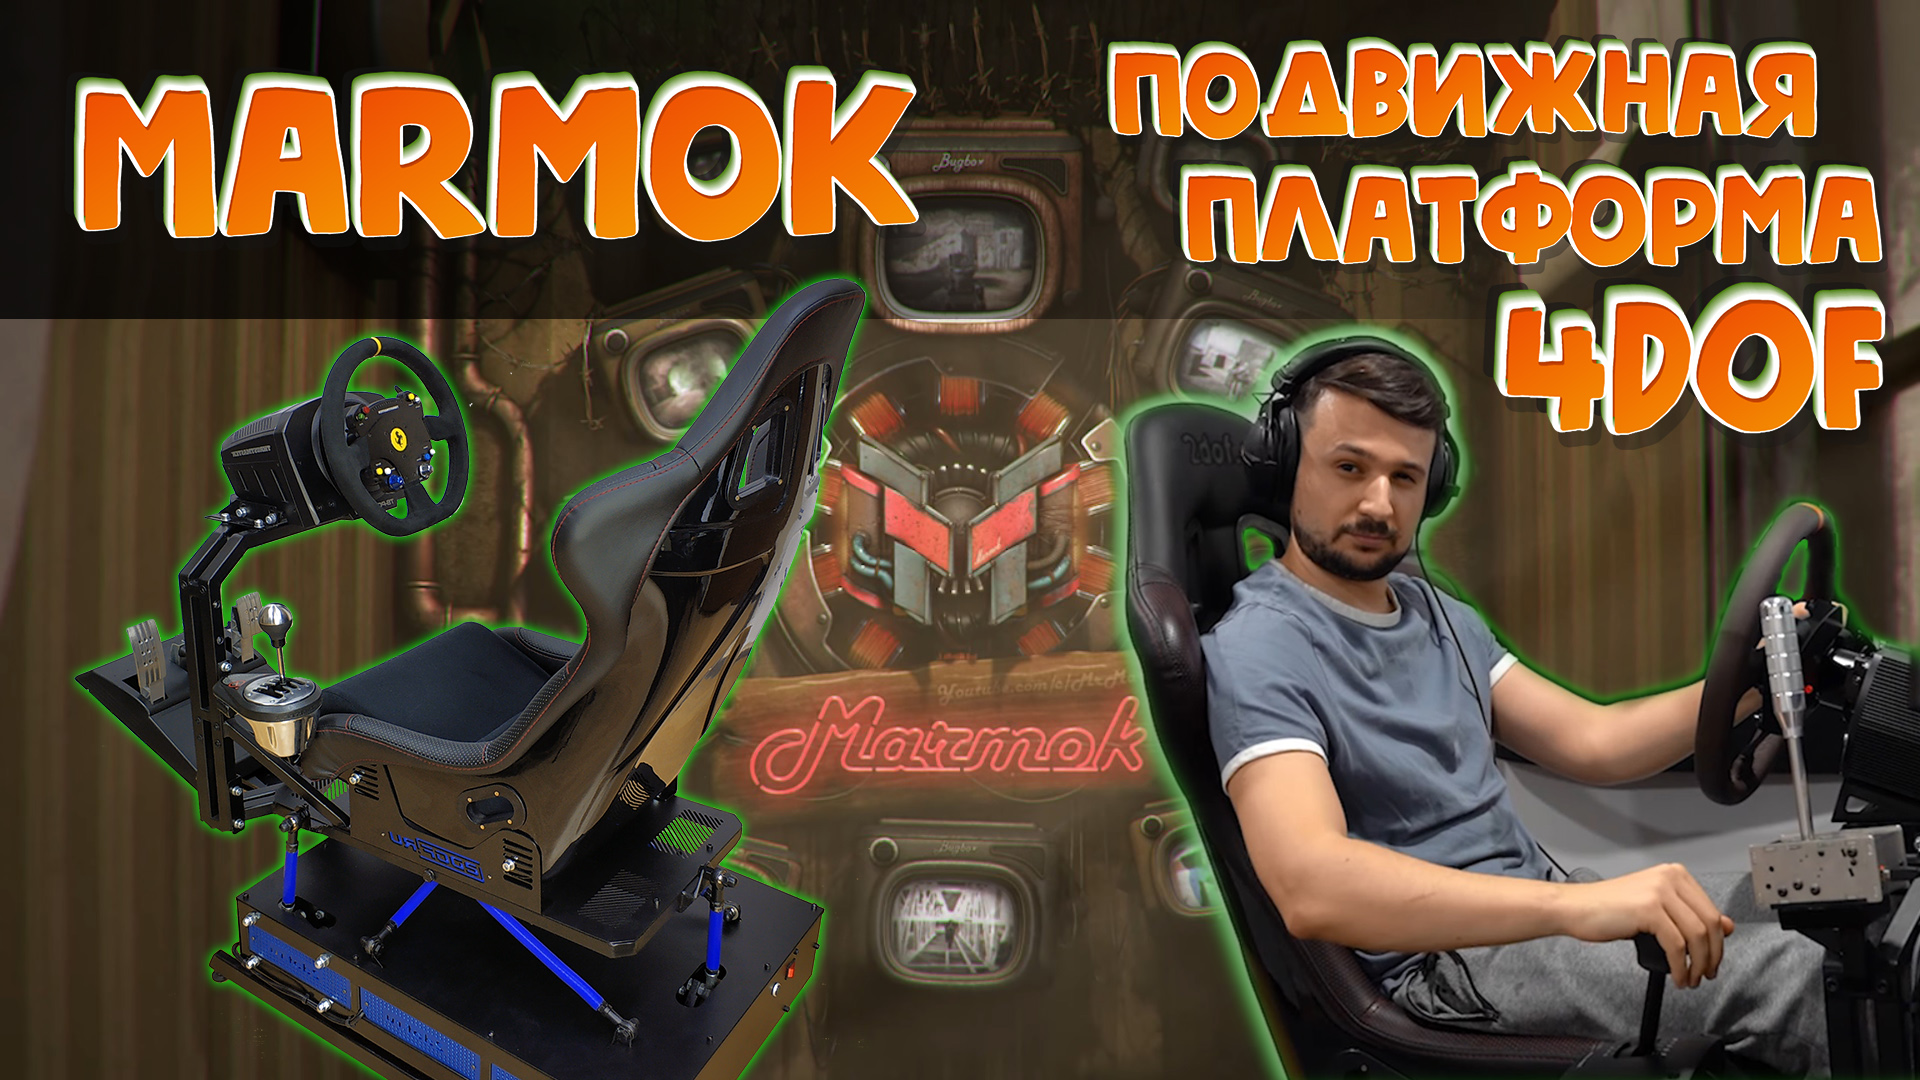 Marmok на подвижной платформе 4dof, первые впечатления !  Активный кокпит или sim кресло?